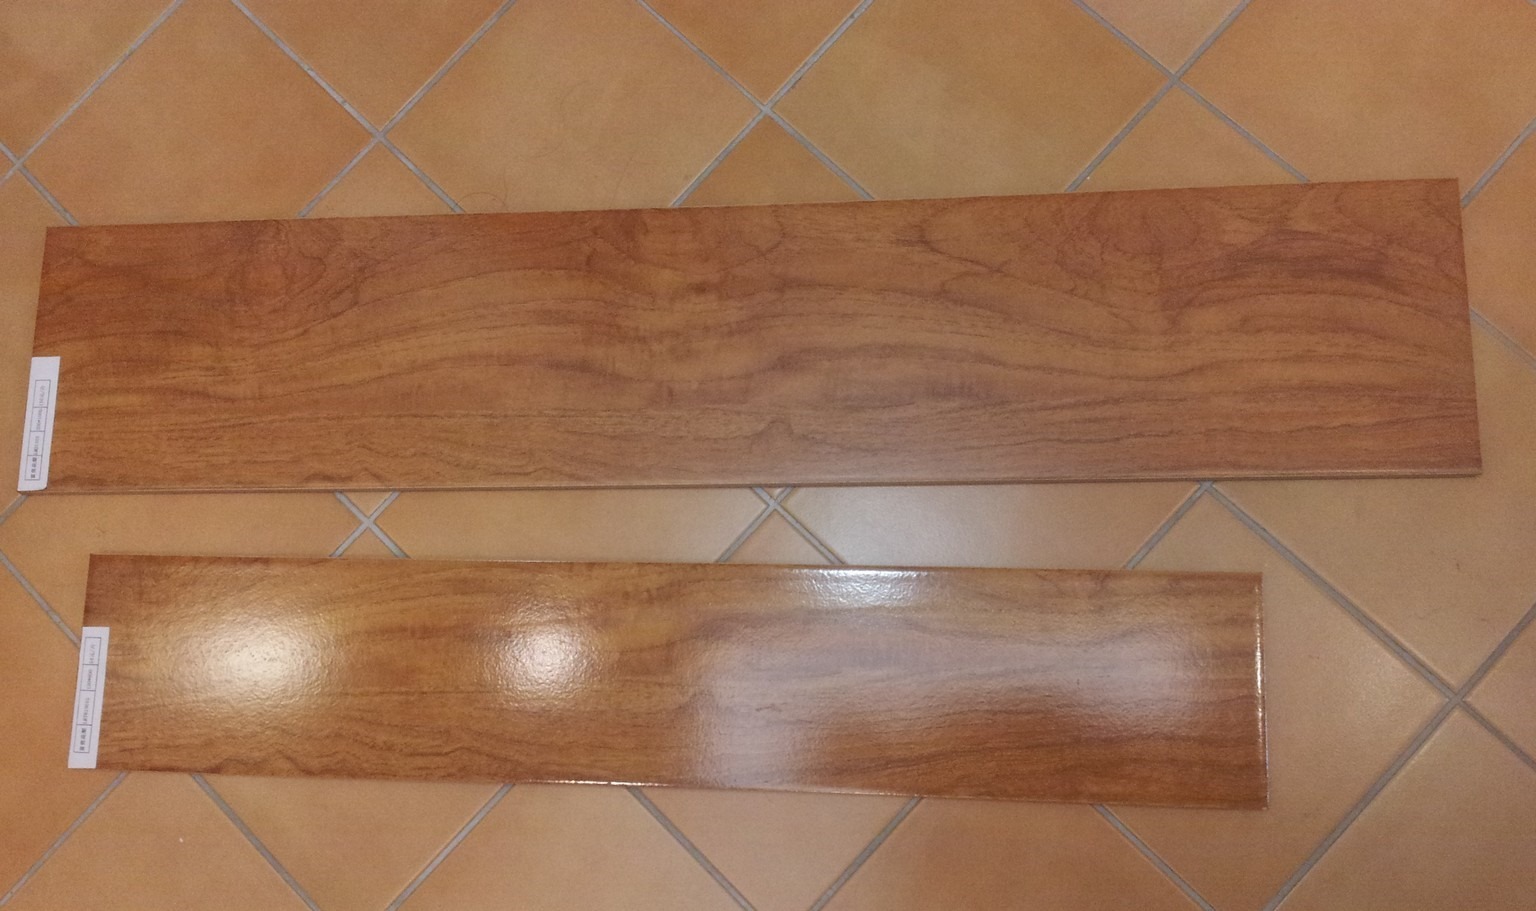 wood grain matt tile vs light tile effect